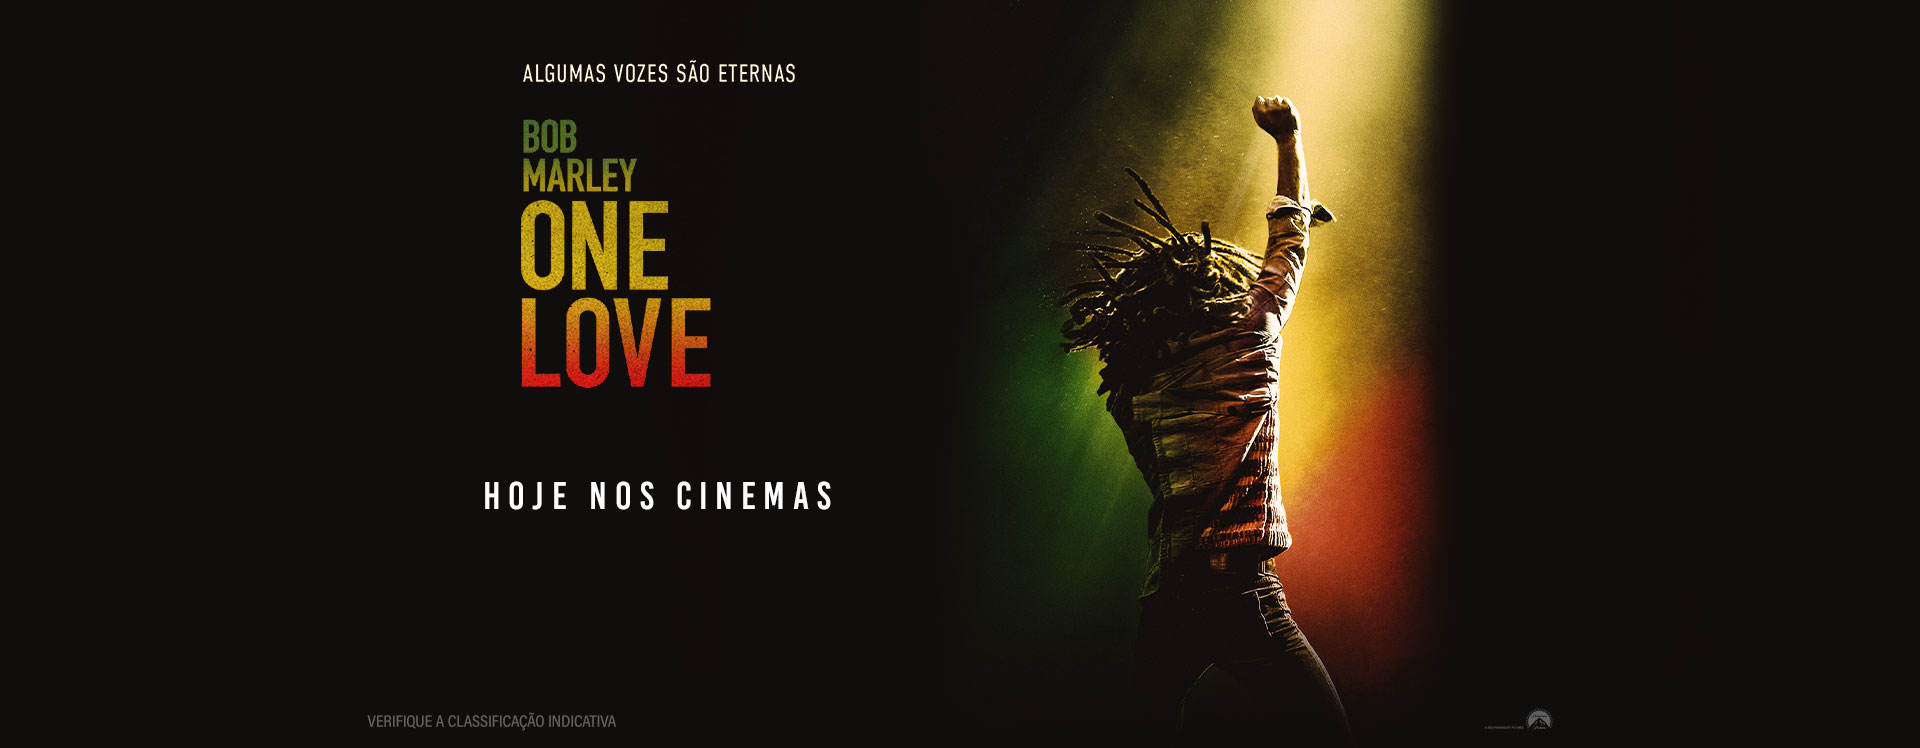 Bob Marley: One